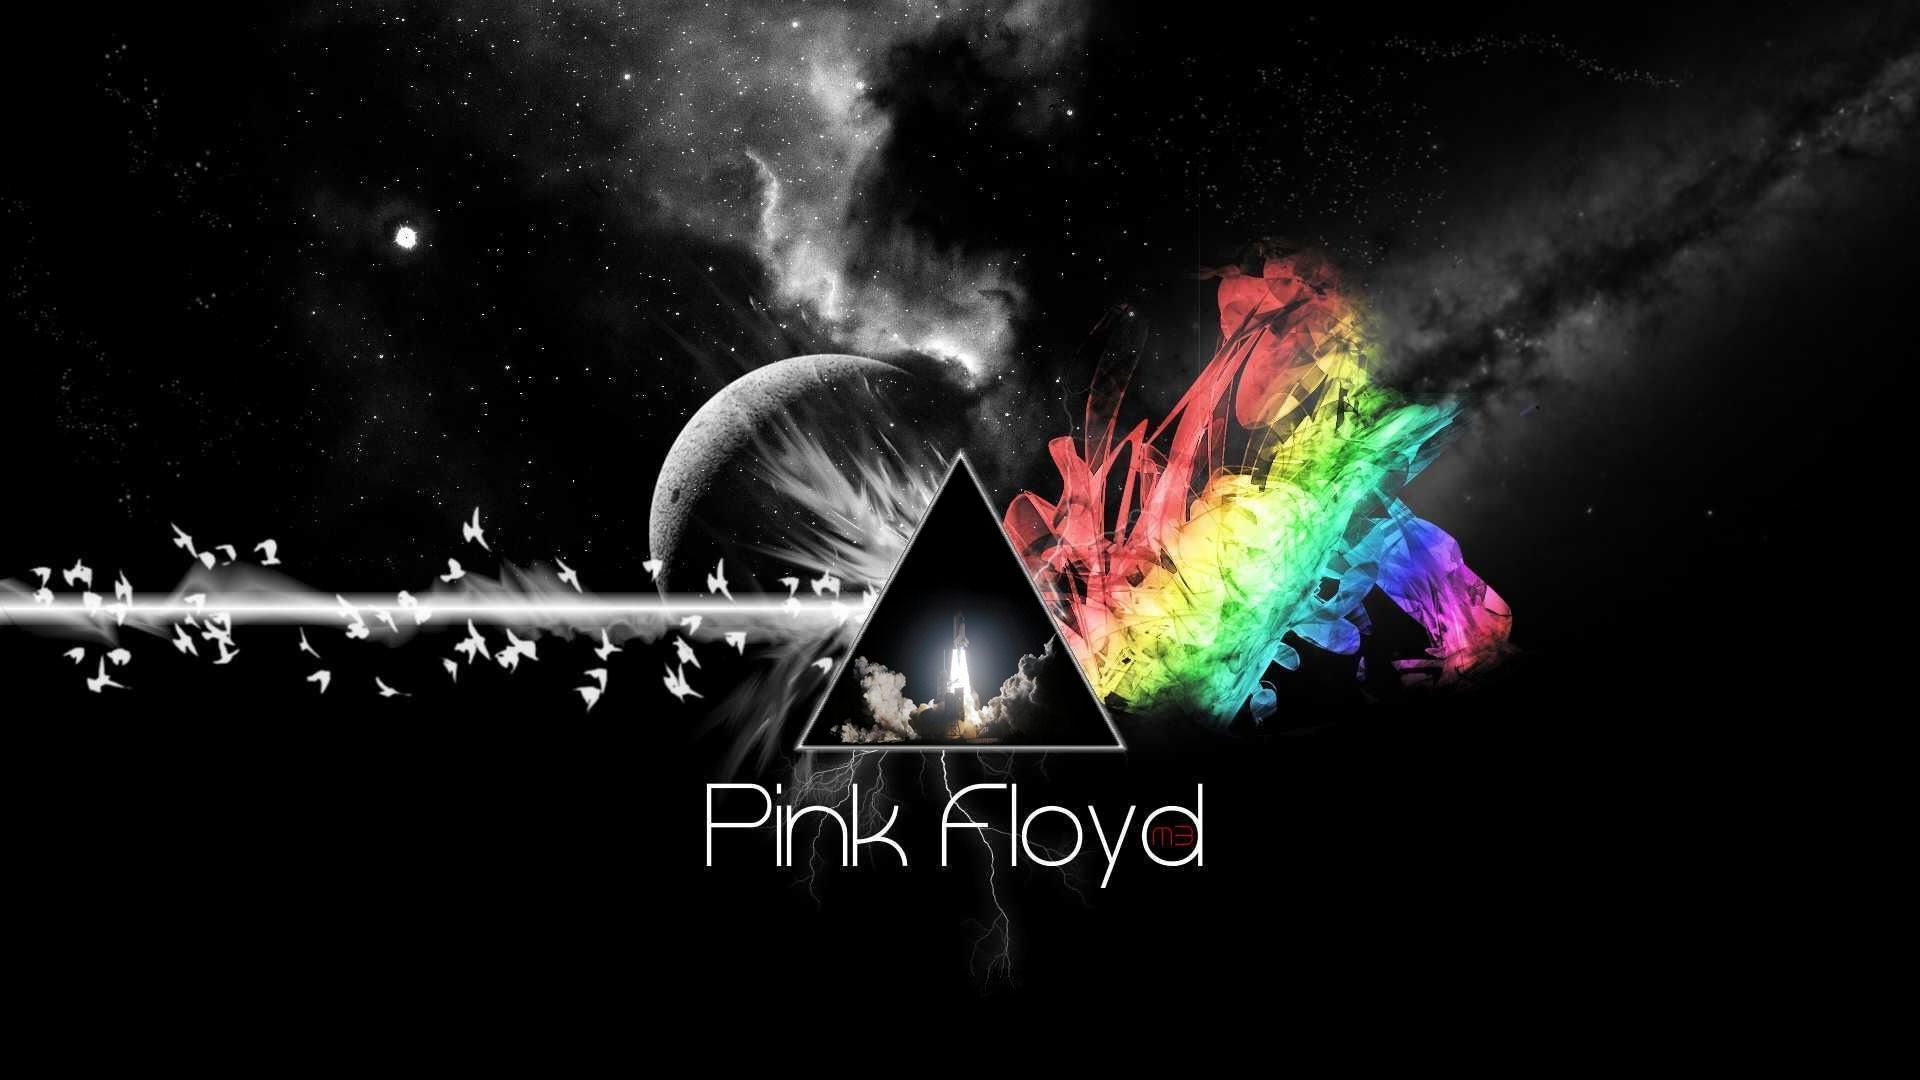 პინკ ფლოიდი / Pink Floyd: The Story of Wish You Were Here ქართულად